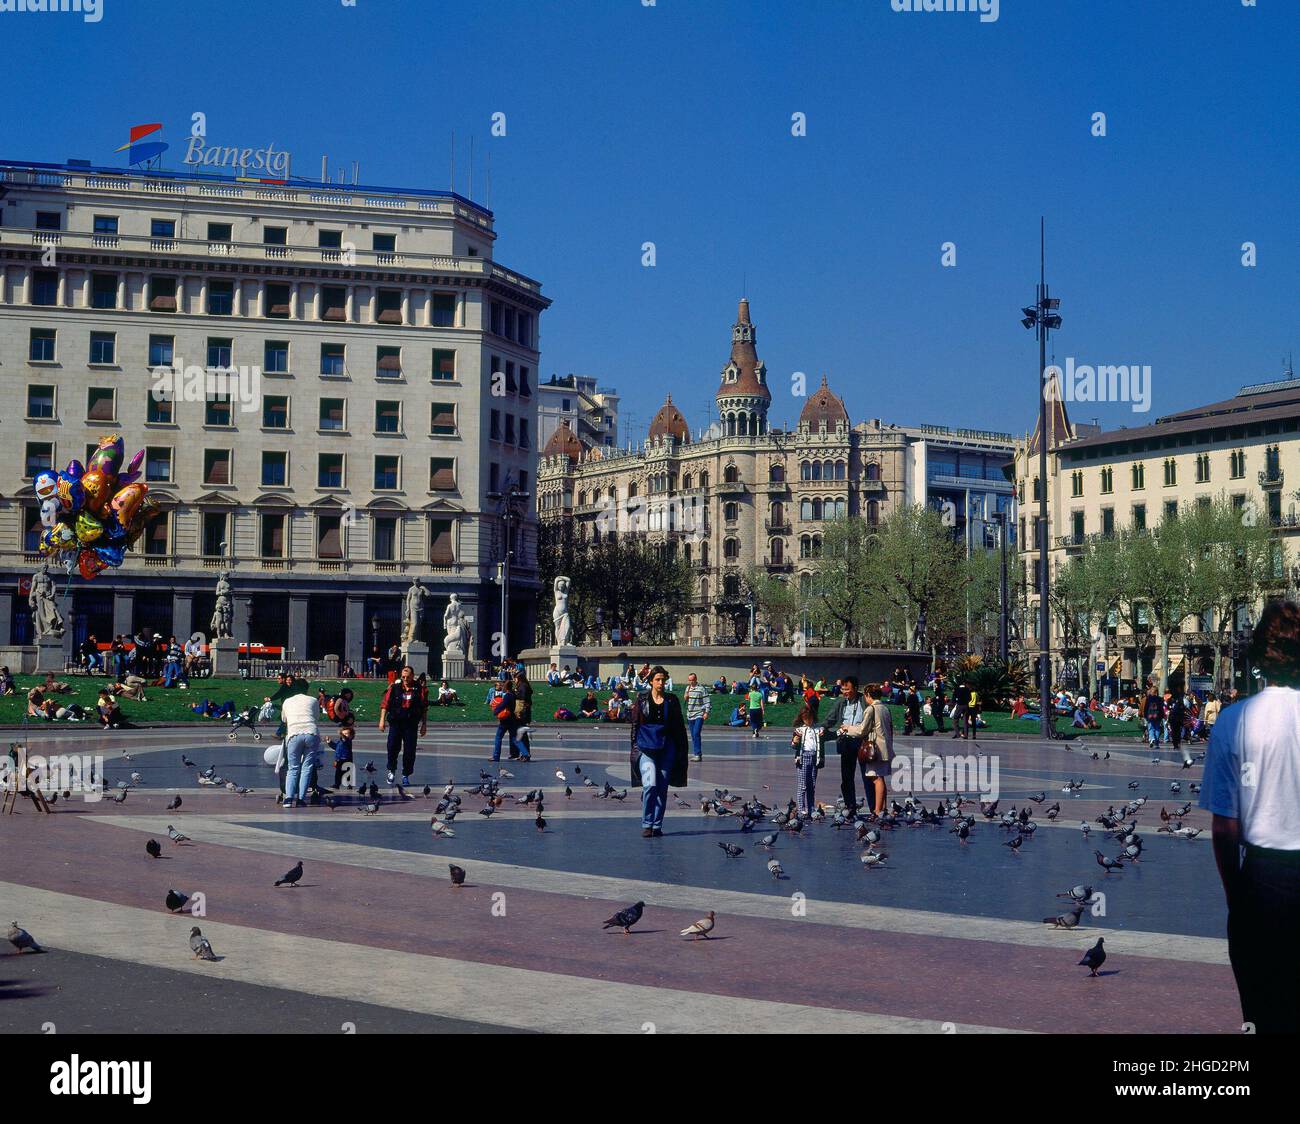 PLAZA DE CATALUÑA CON PALOMAS Y GENTE - FOTO AÑOS 90 -. Location: EXTERIOR. Barcelona. SPAIN. Stock Photo